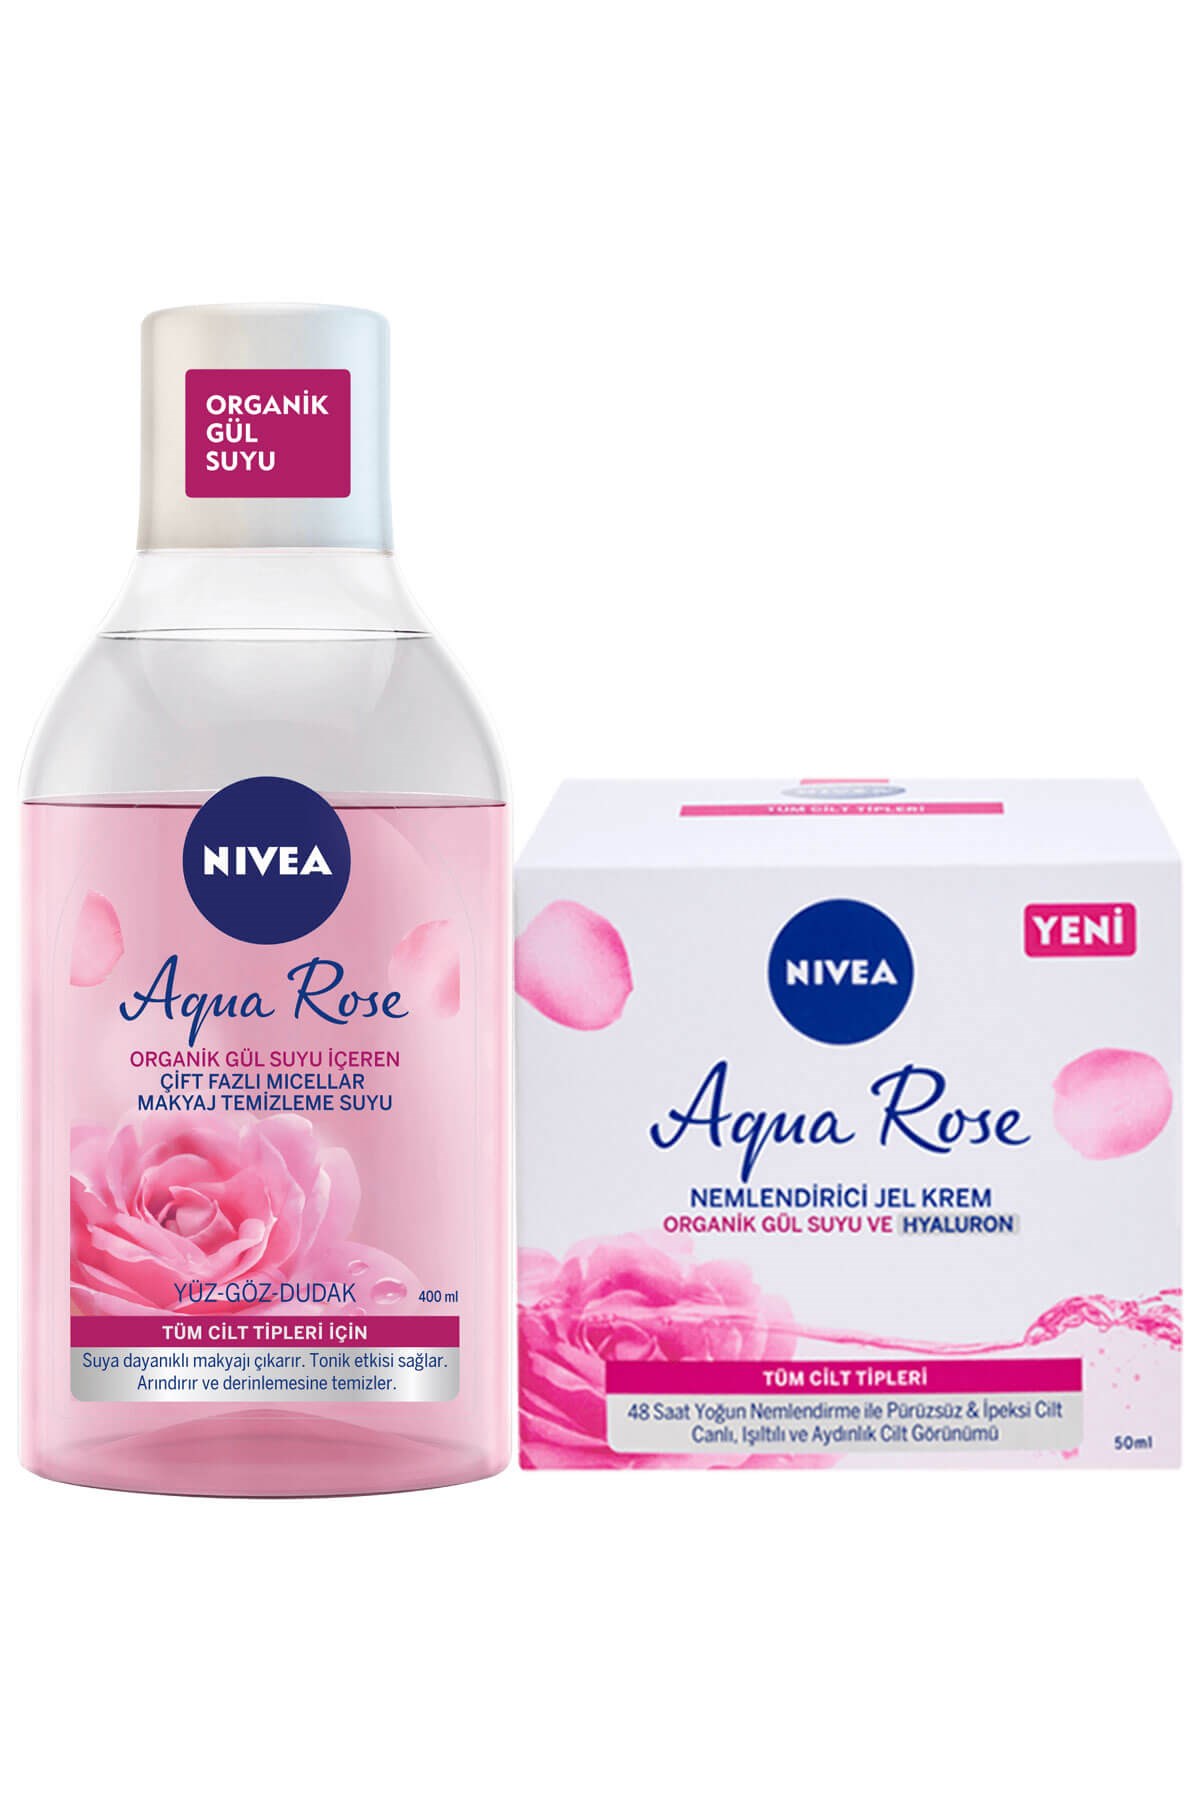 Nivea Aqua Rose Organik Gül Suyu İçeren Çift Fazlı Temizleme Suyu 400 ml +  Aqua Rose Nemlendirici Jel Krem 50 Ml - Andia